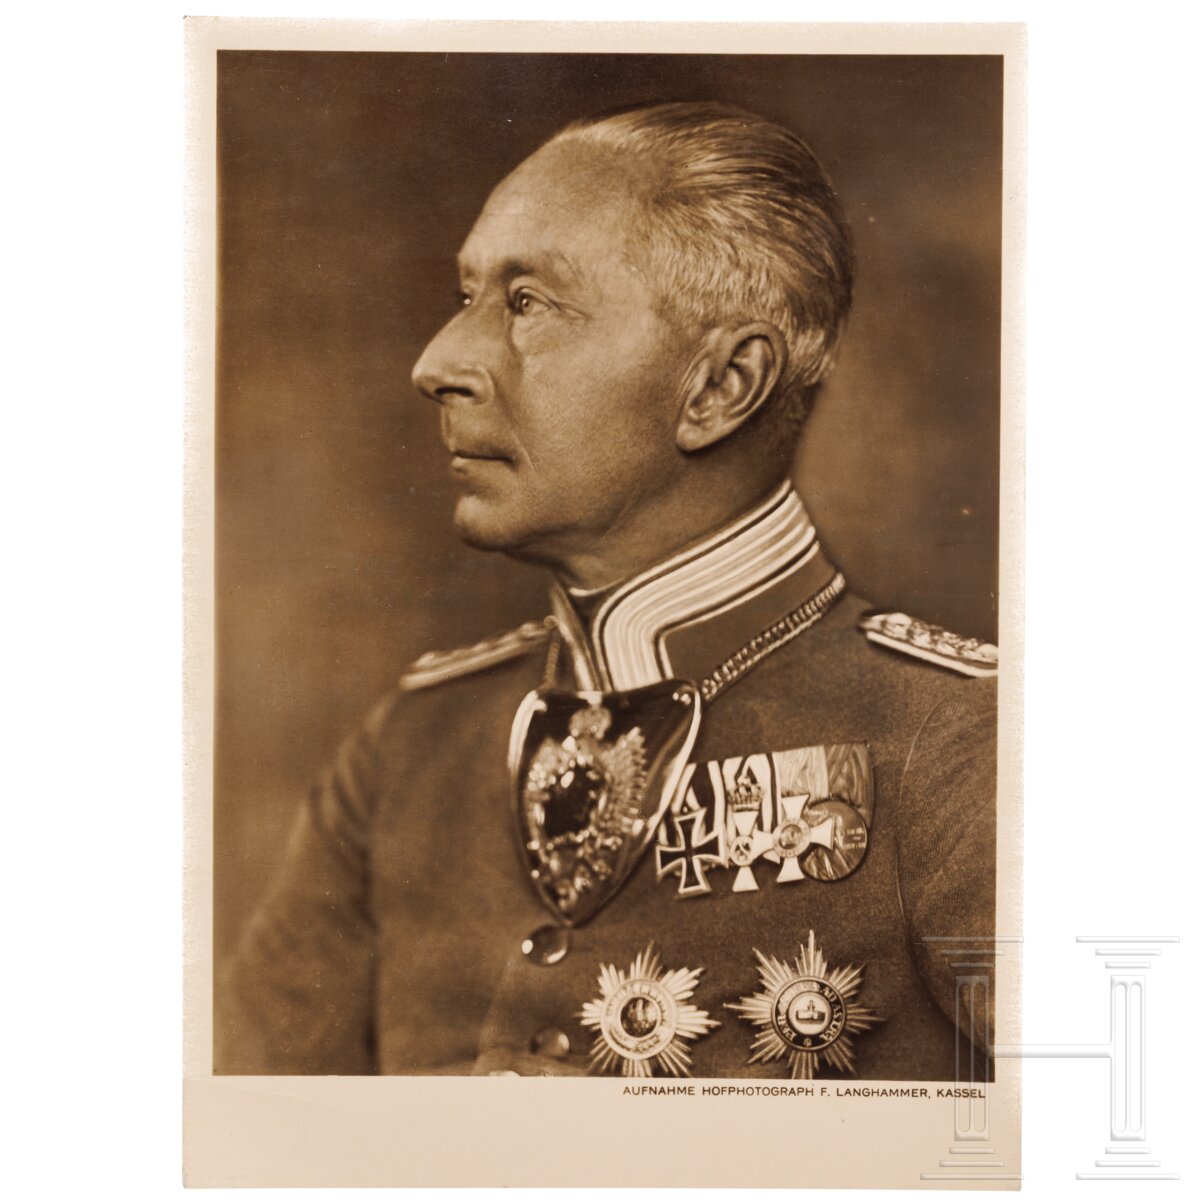 Kronprinz Wilhelm von Preußen (1882 - 1951) - signierte Portraitpostkarte, 1936